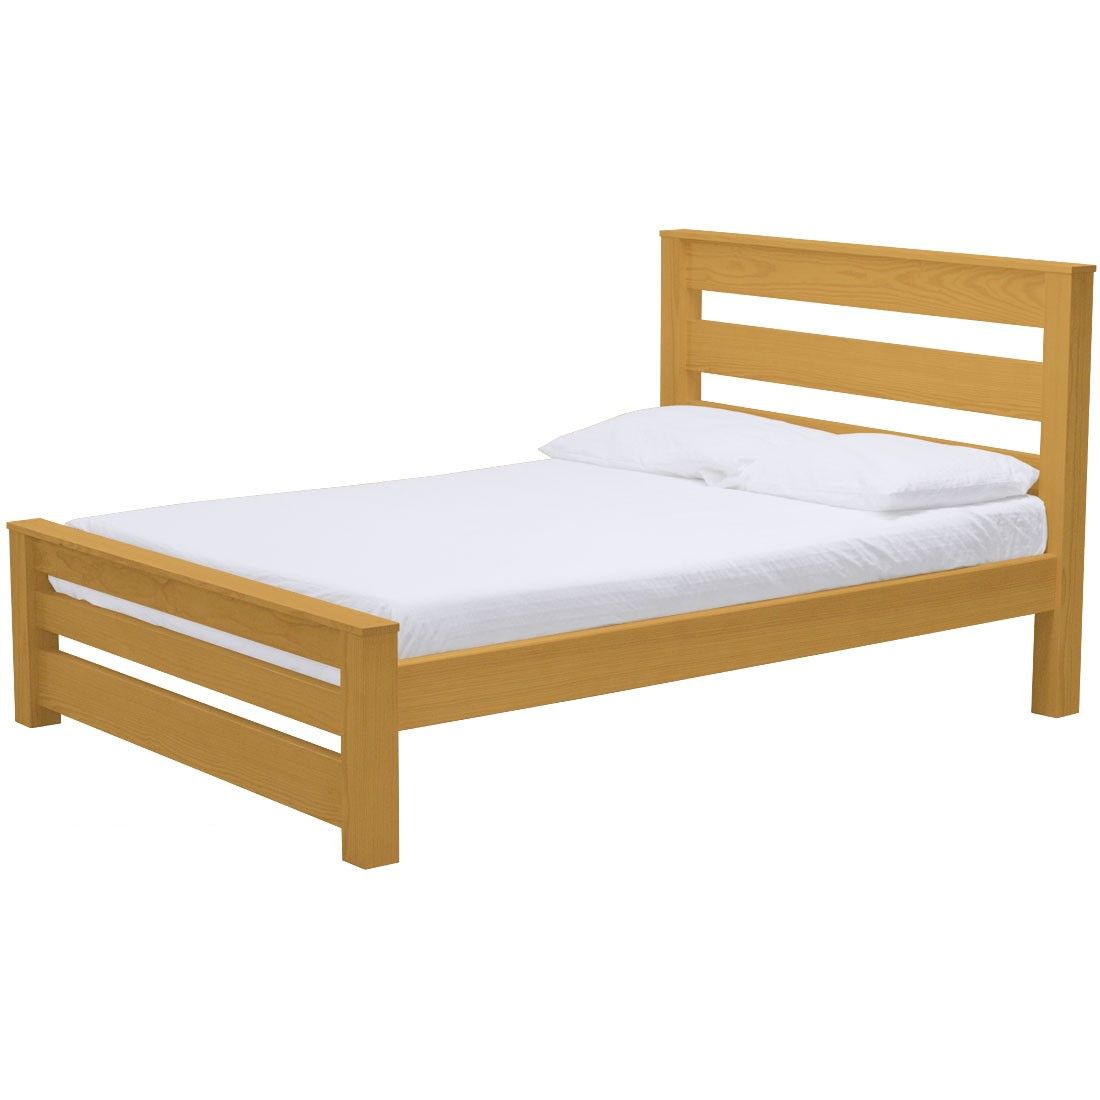 Platform Bed Timber Design Single Xl, New Wood Platform Bed Frame Xl Twin Size Solid Hardwood